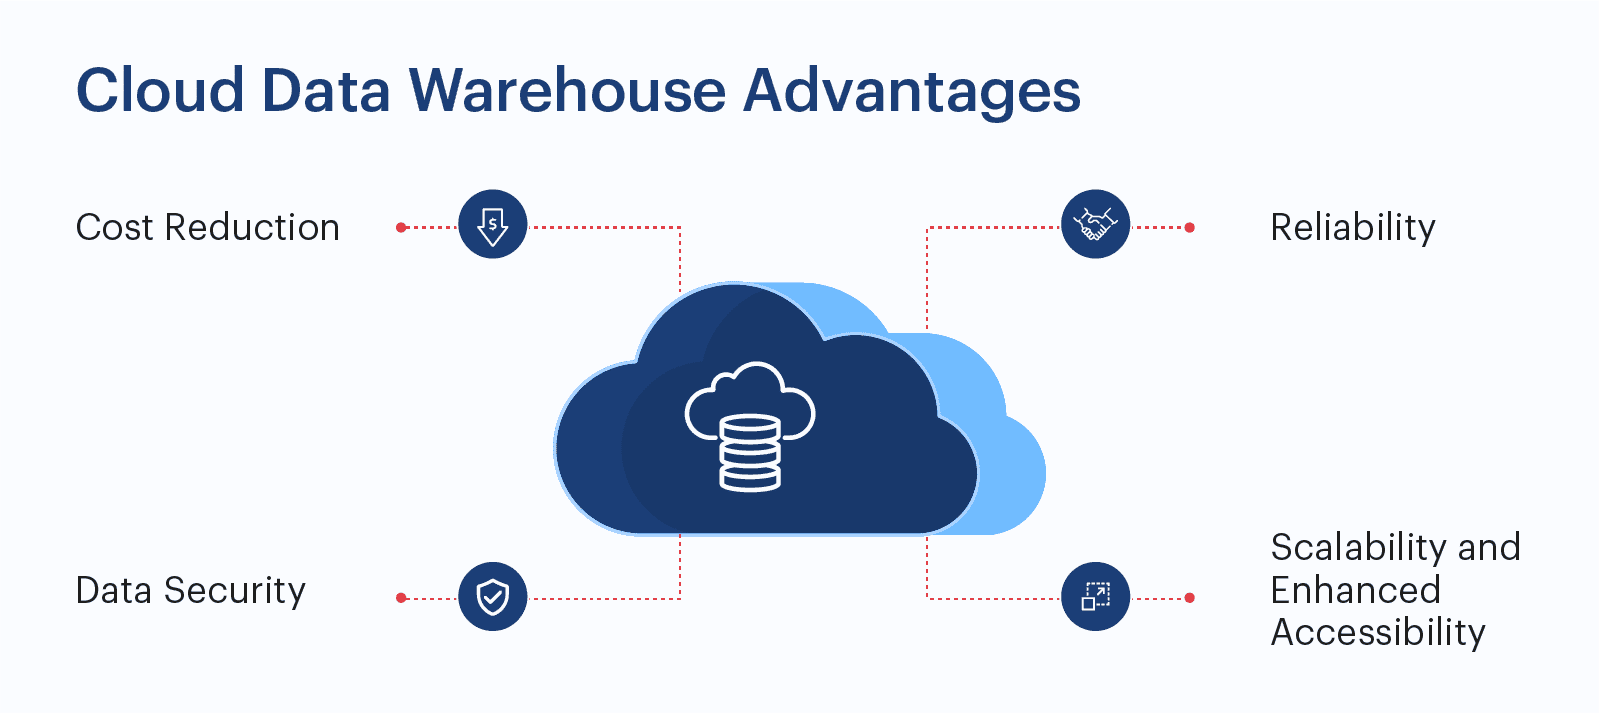 Cloud data warehouse advantages